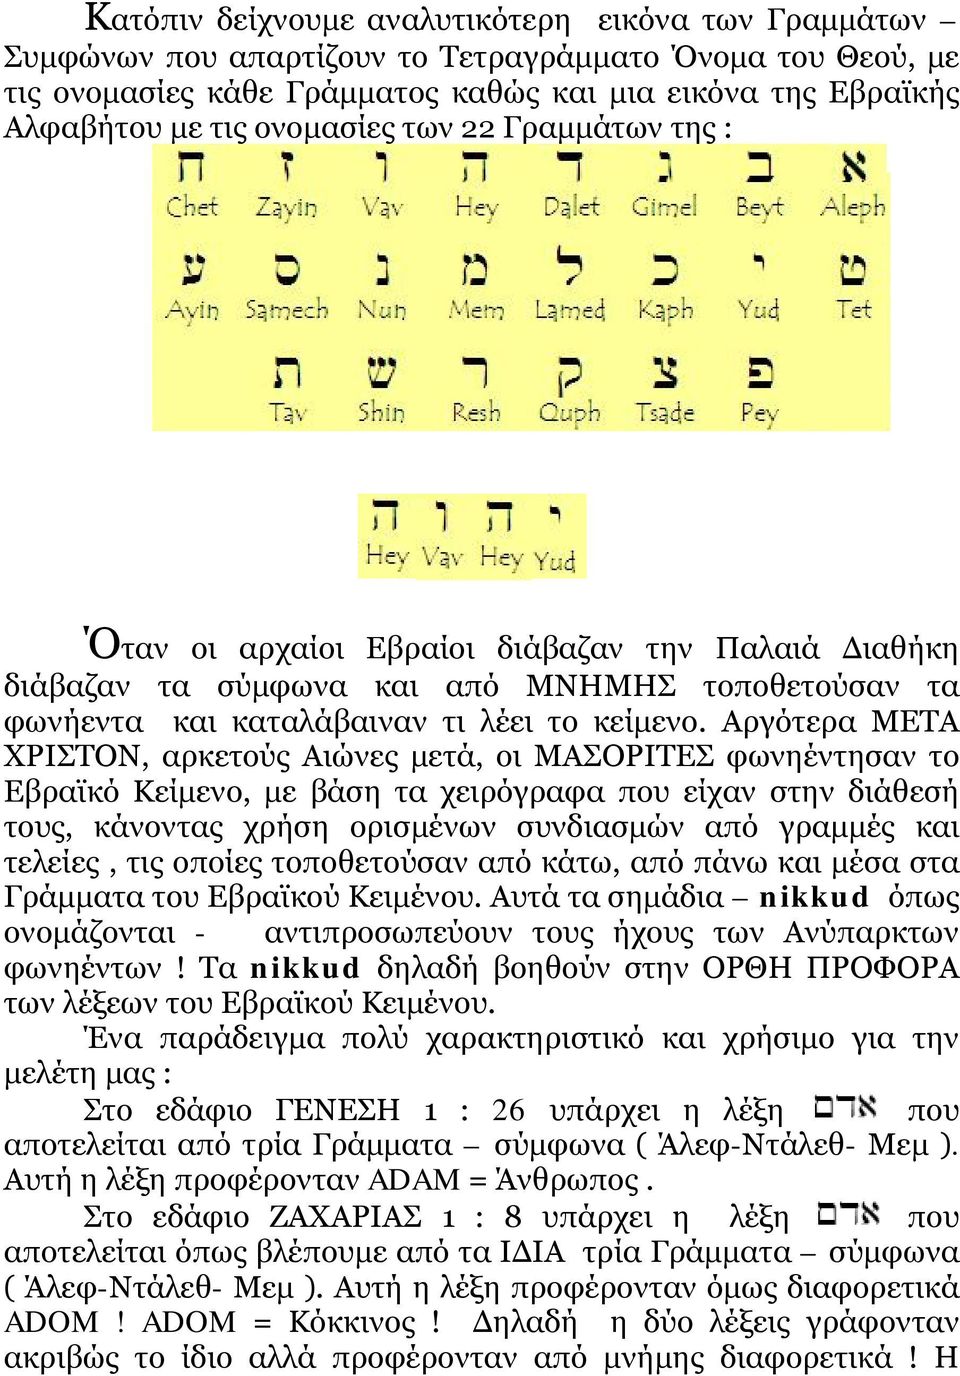 Αργότερα ΜΕΤΑ ΧΡΙΣΤΟΝ, αρκετούς Αιώνες μετά, οι ΜΑΣΟΡΙΤΕΣ φωνηέντησαν το Εβραϊκό Κείμενο, με βάση τα χειρόγραφα που είχαν στην διάθεσή τους, κάνοντας χρήση ορισμένων συνδιασμών από γραμμές και